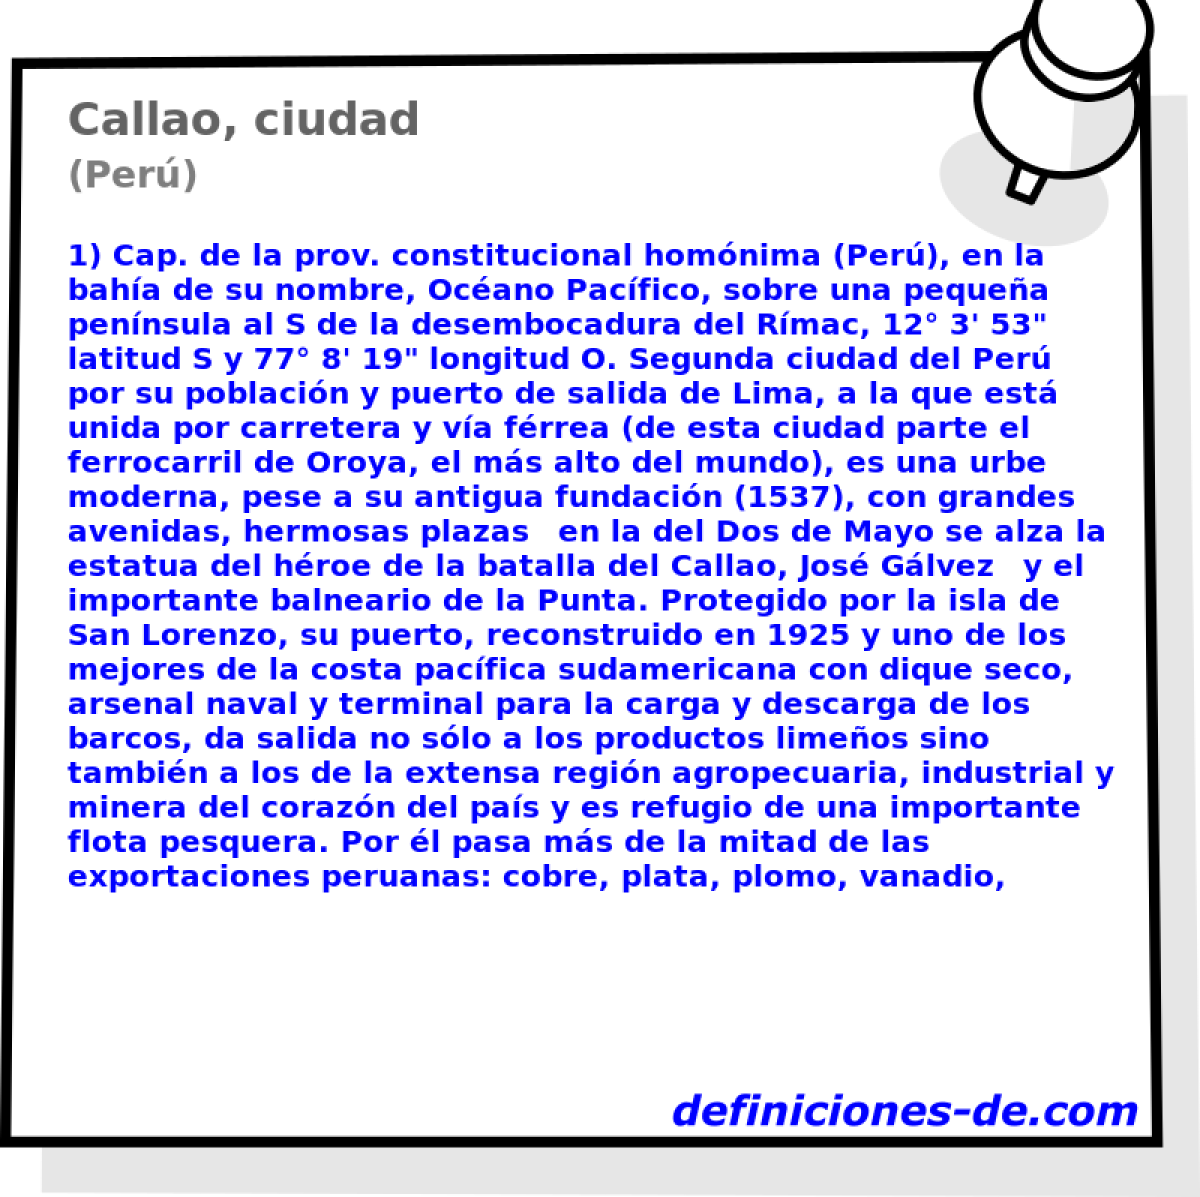 Callao, ciudad (Per)